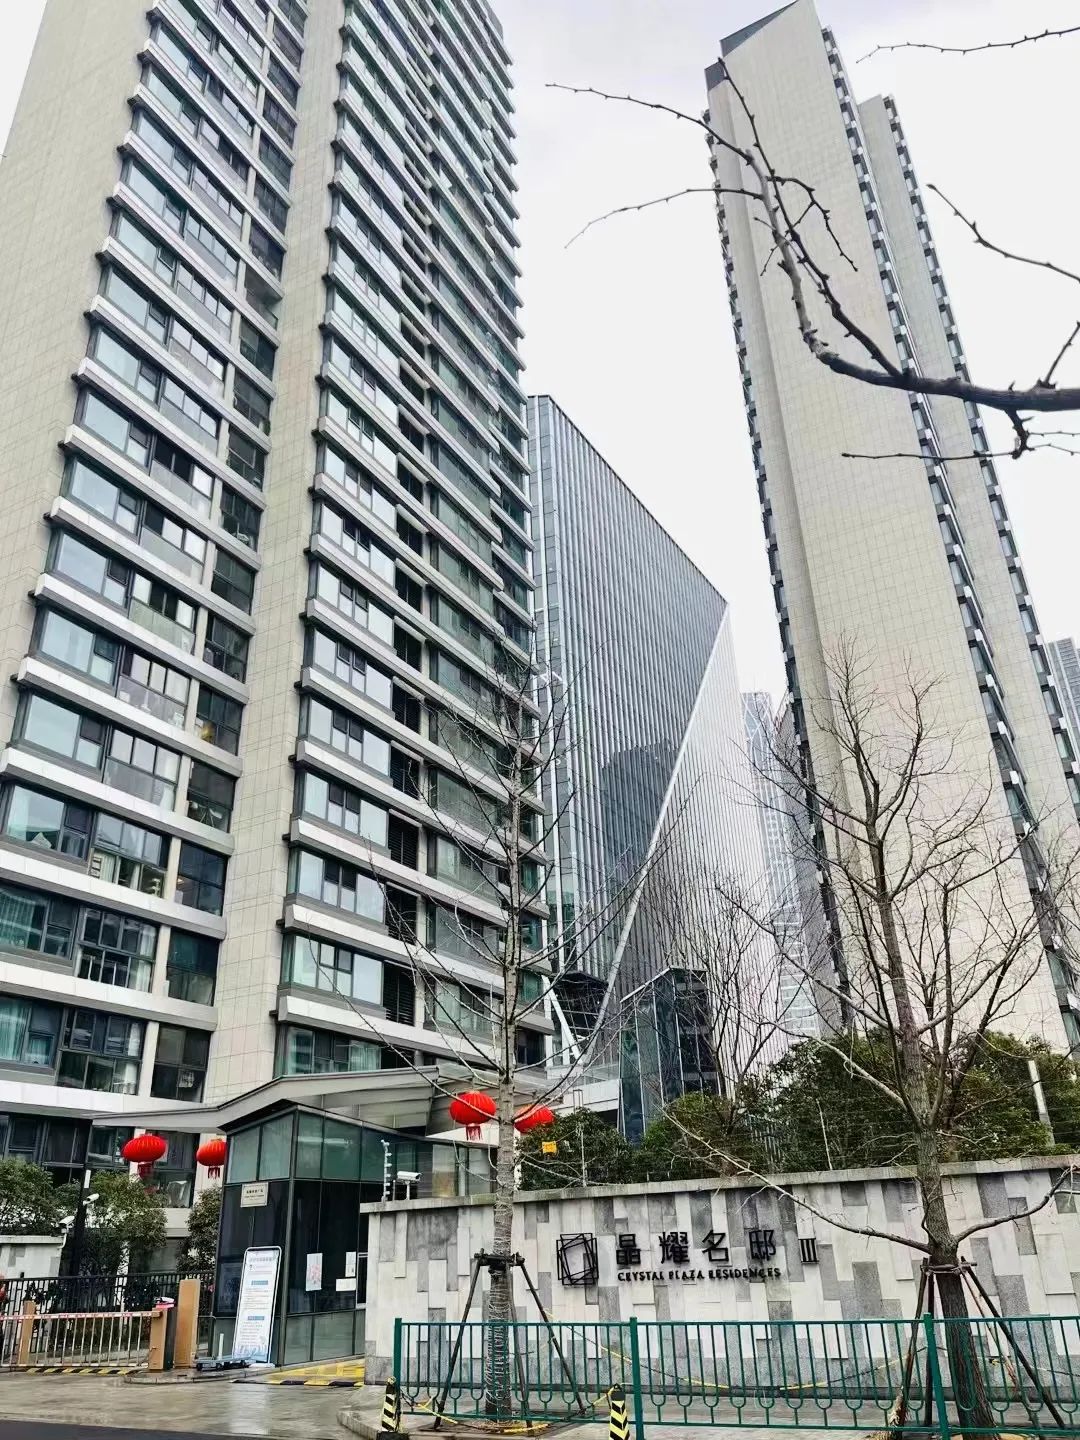 96套上海房产被查封 价值17亿 张庭的微商生意多赚钱？